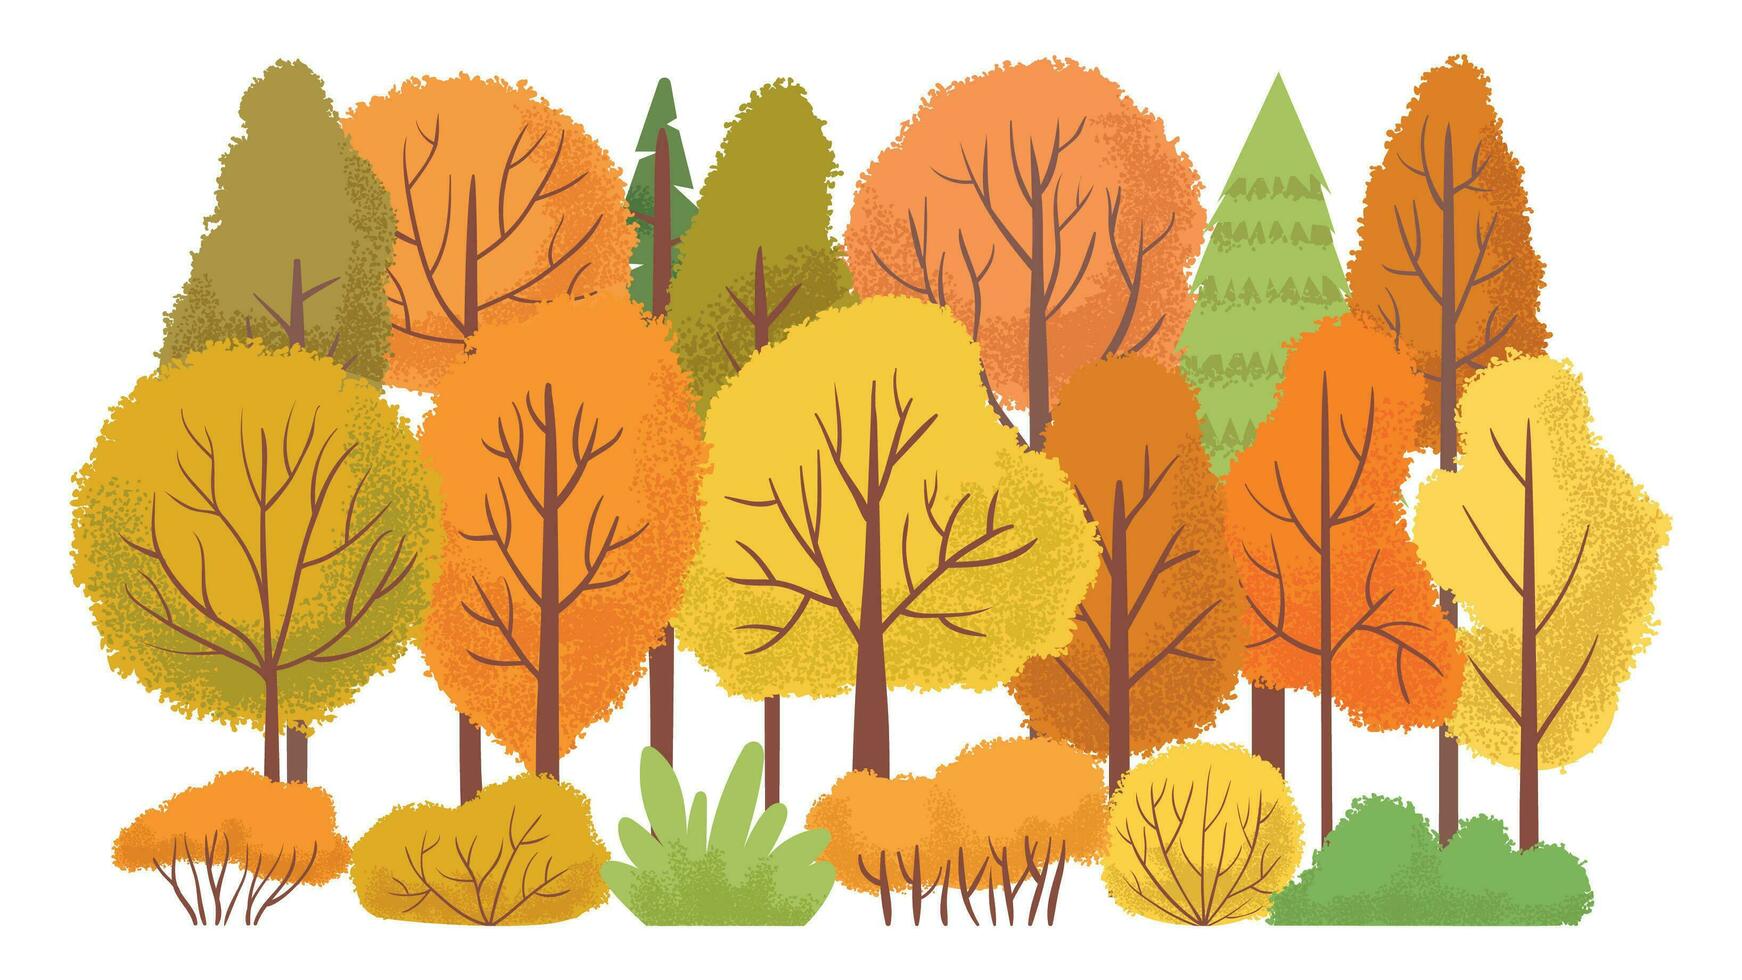 höst skog träd. höstlig trädgård, gul träd abstrakt tecknad serie vektor illustration